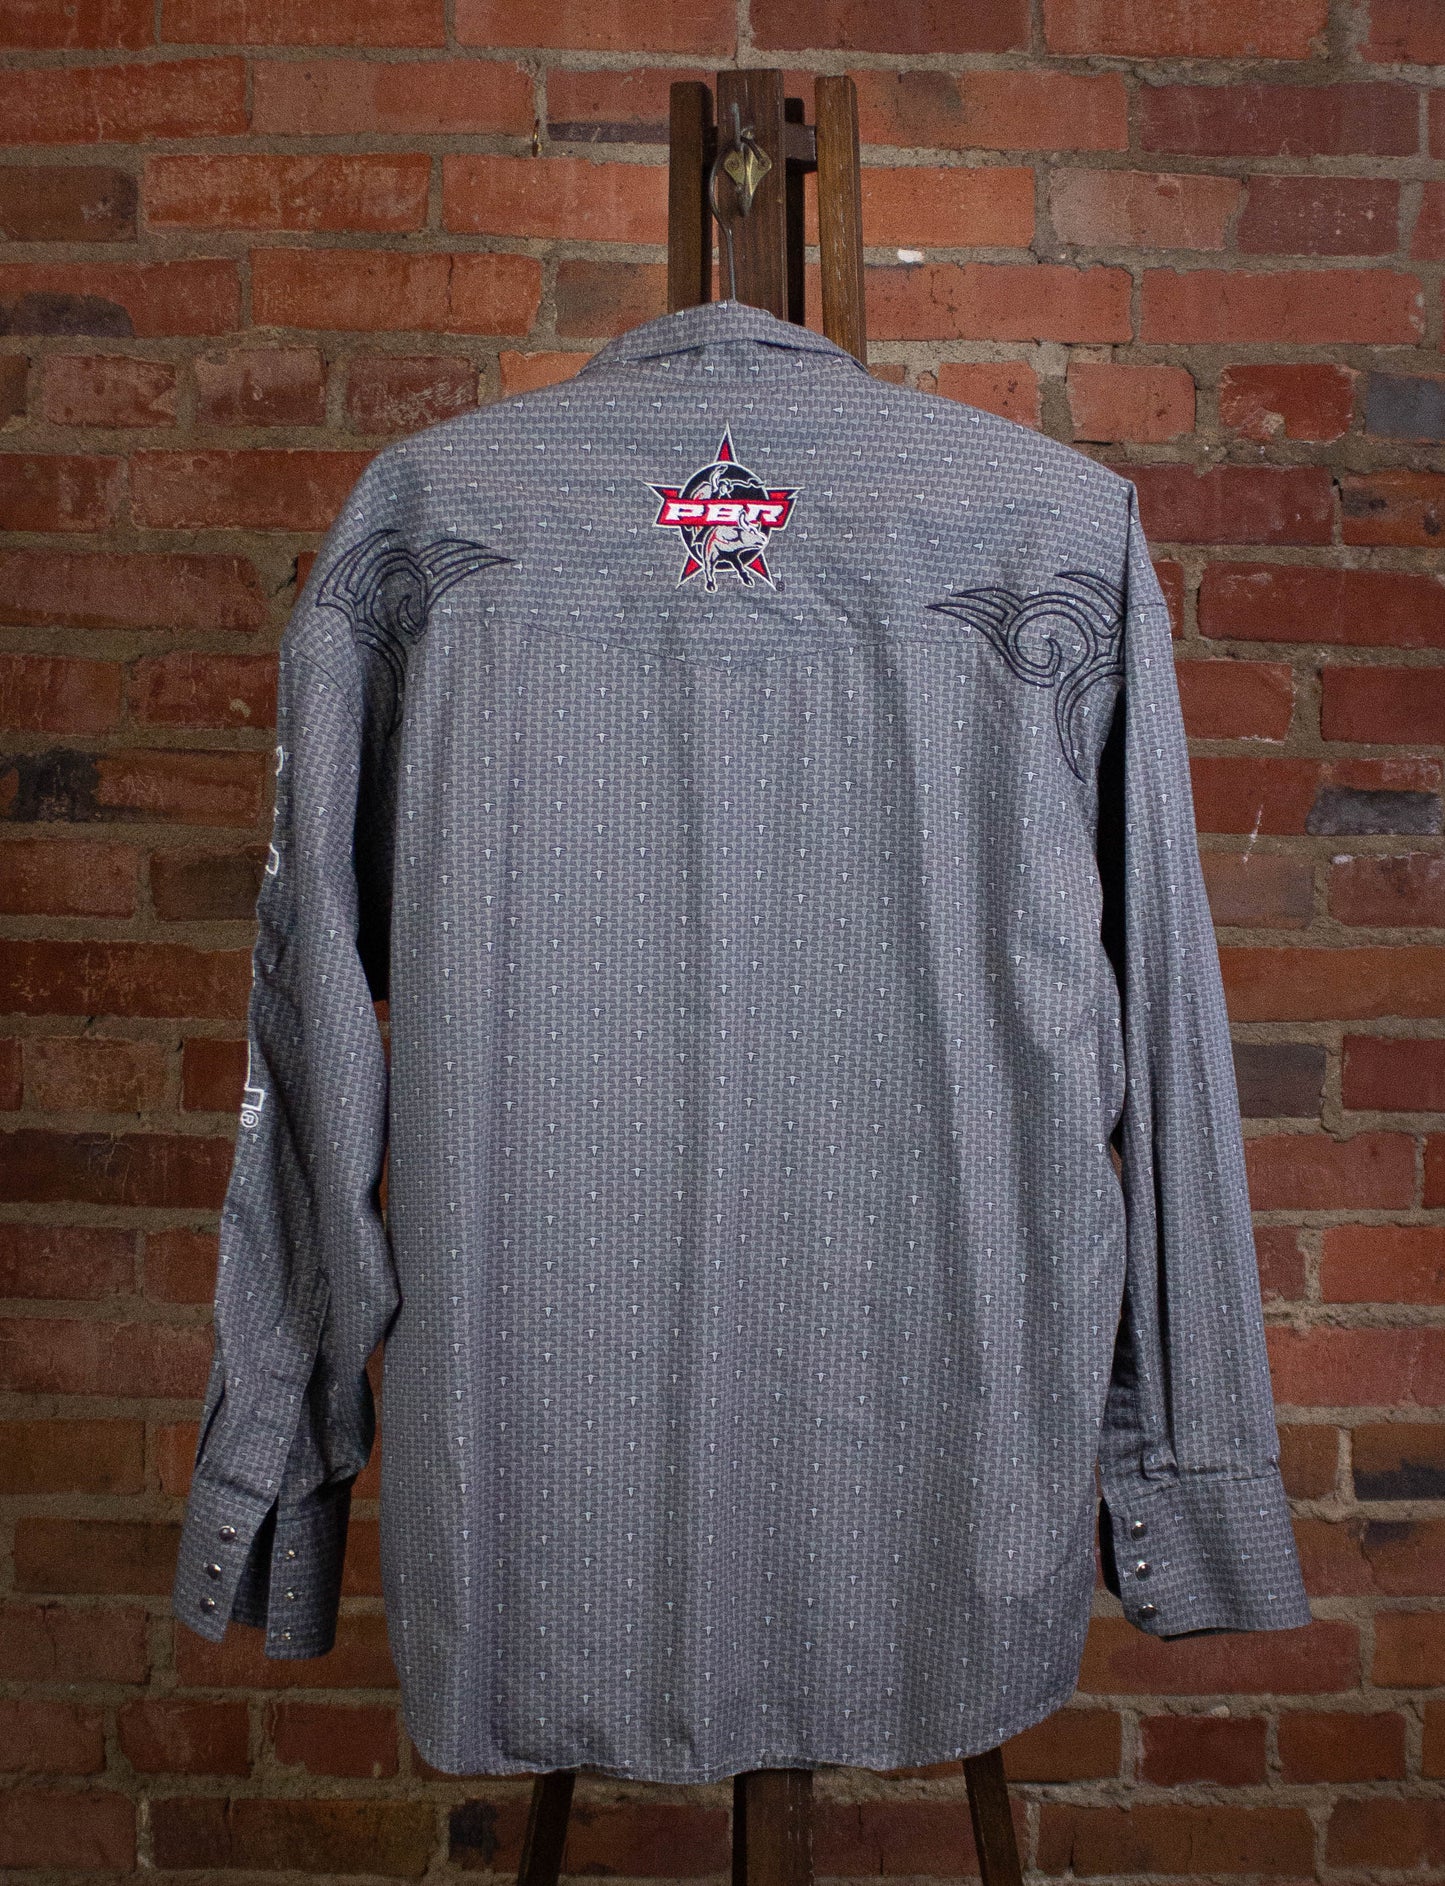 Wrangler PBR Button Up Shirt Gray XL